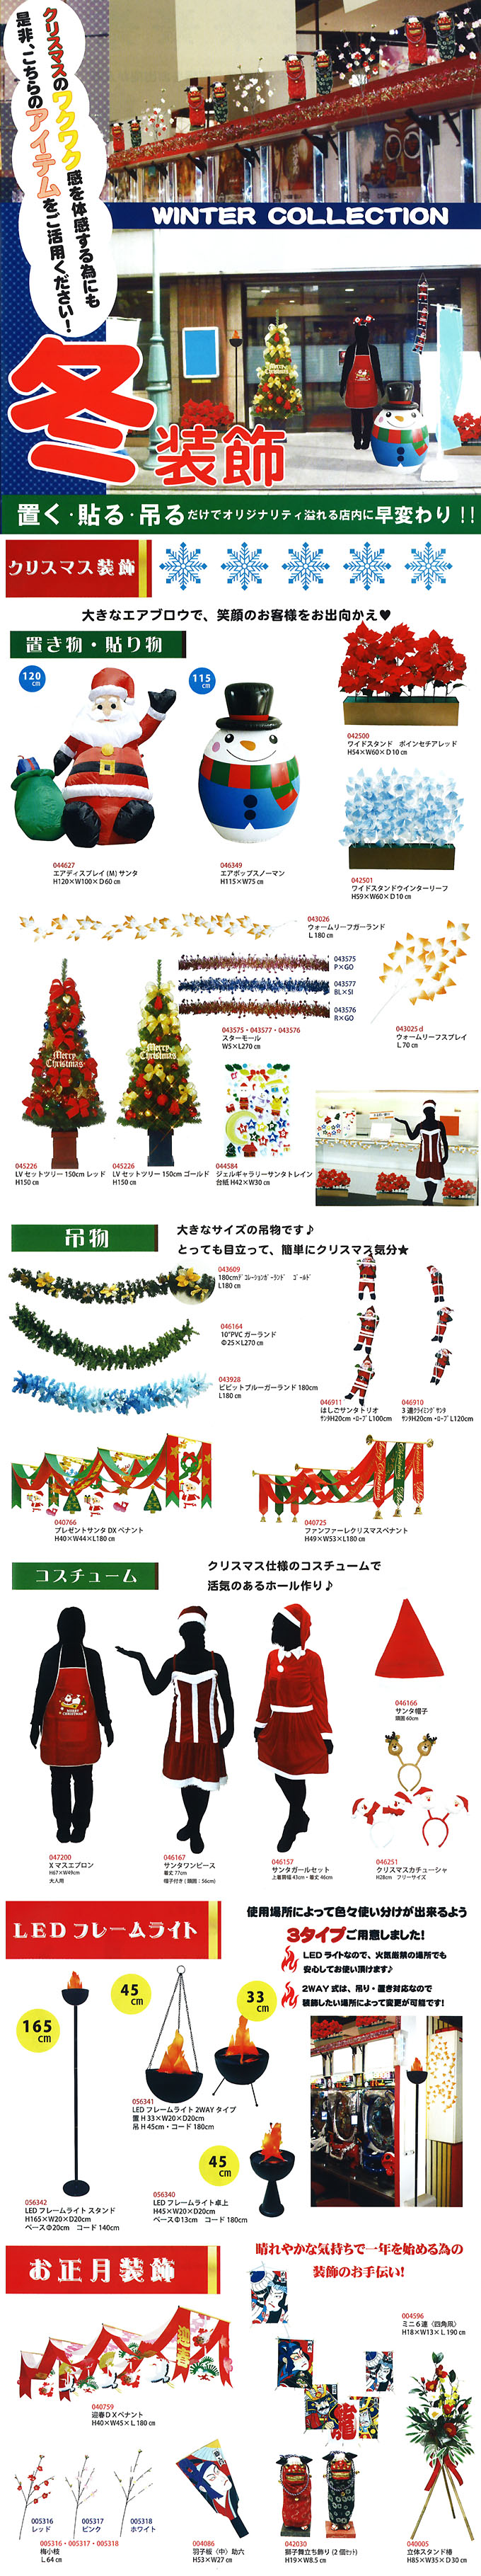 2013 冬装飾【冬物店舗装飾品】